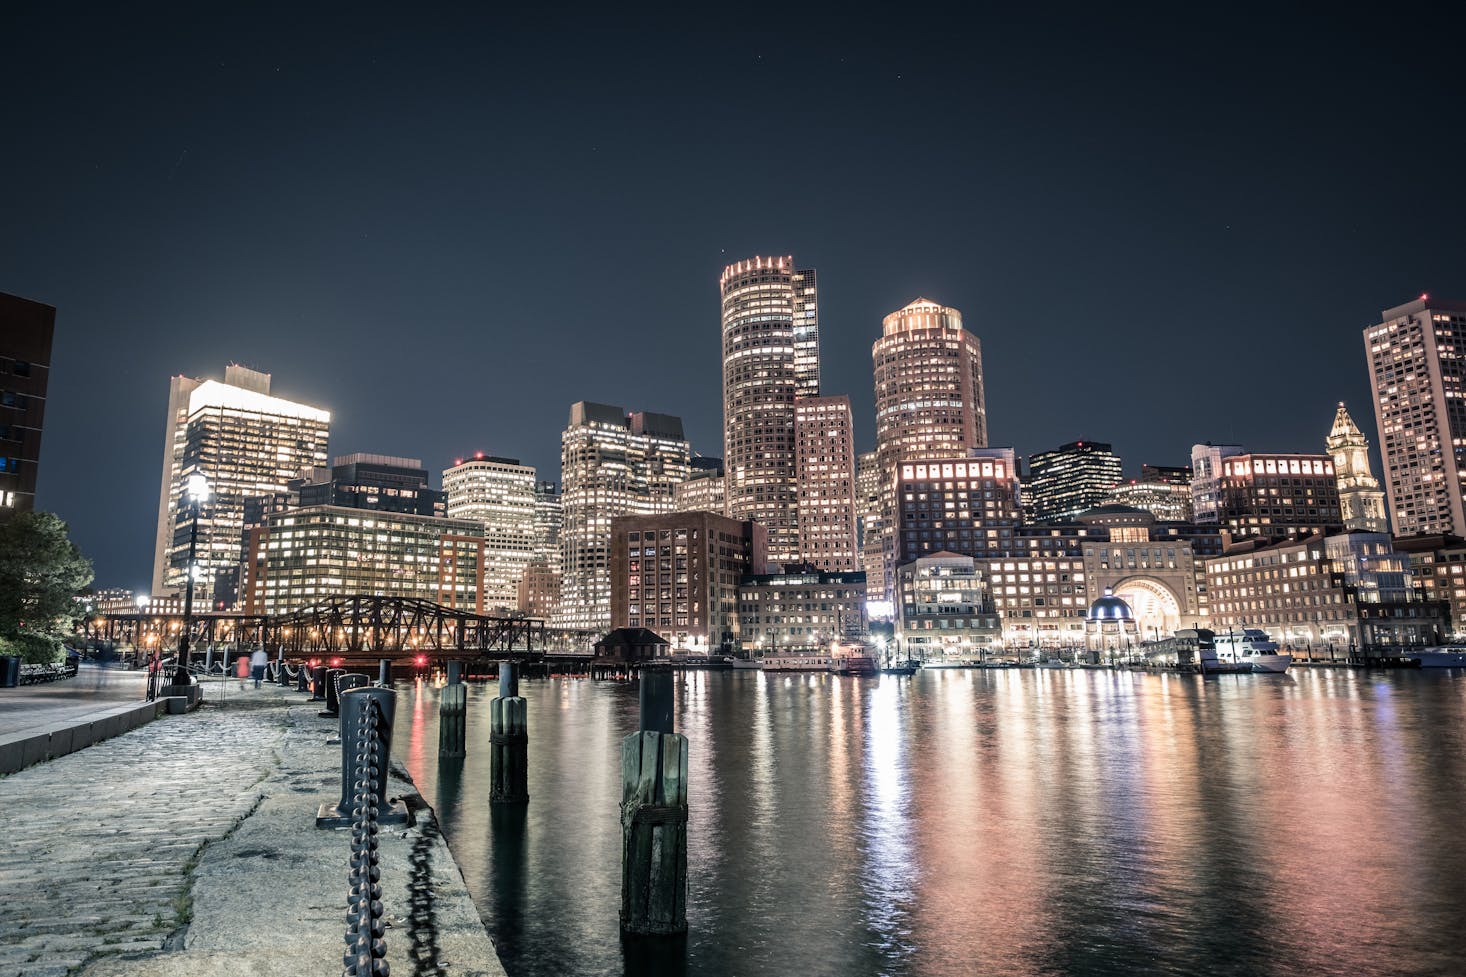 Boston Harbor at night